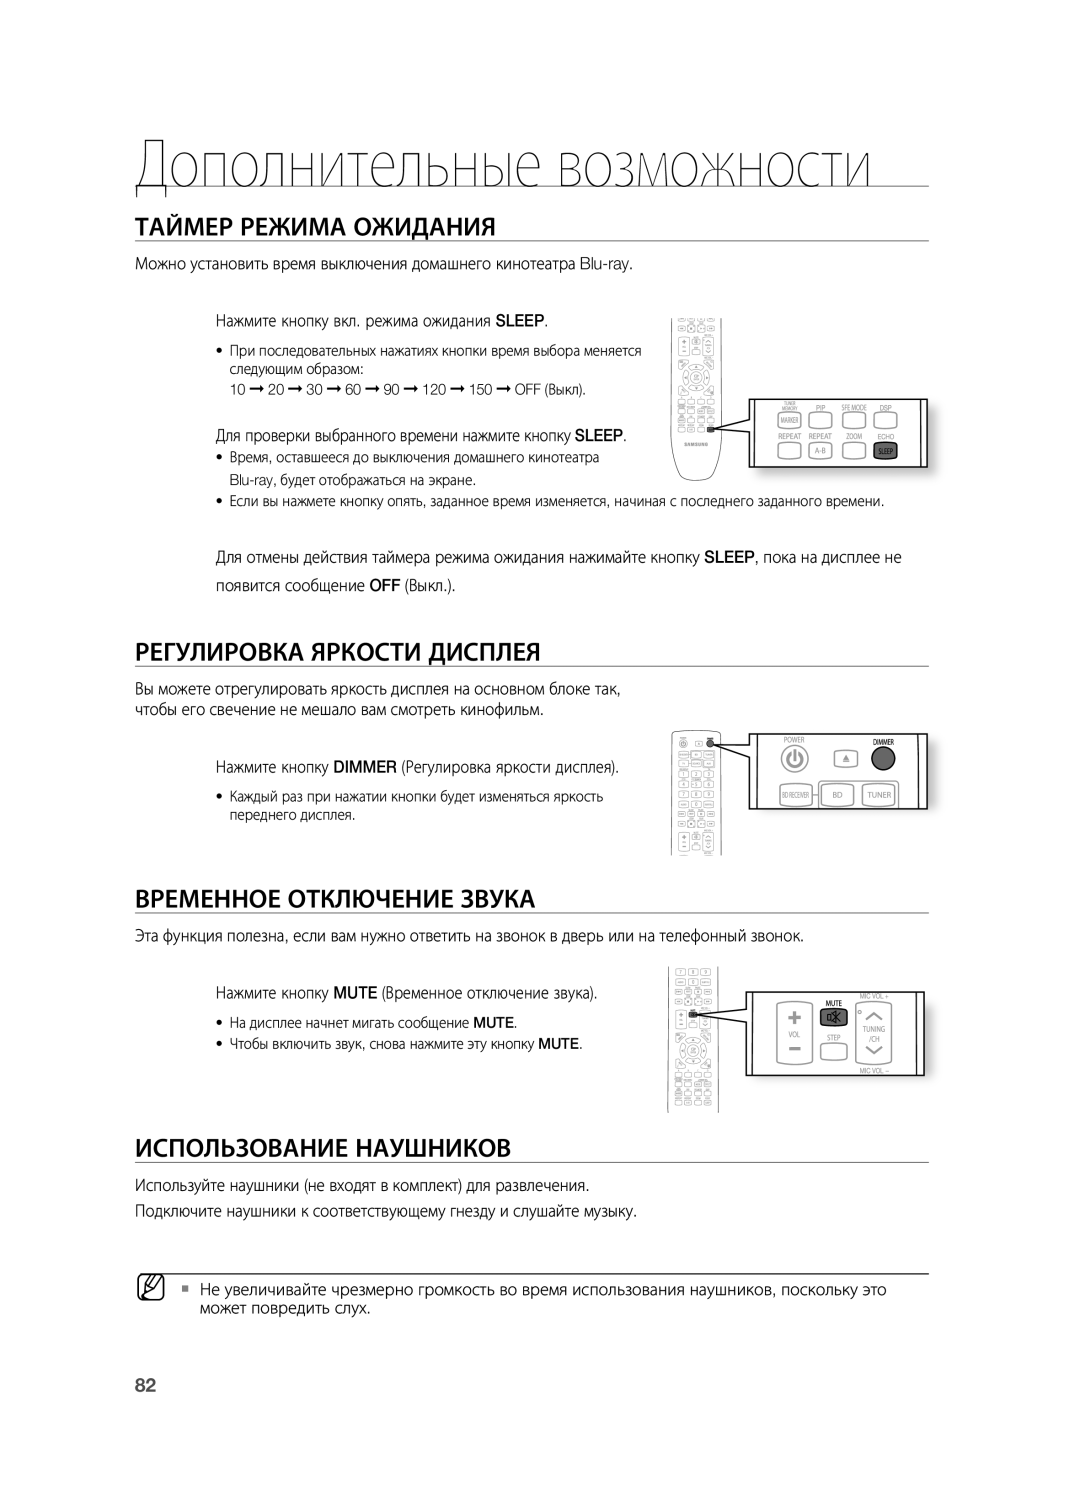 Samsung HT-BD7255R/XER manual Таймер Режима Ожидания, Регулировка Яркости Дисплея, Временное Отключение Звука 